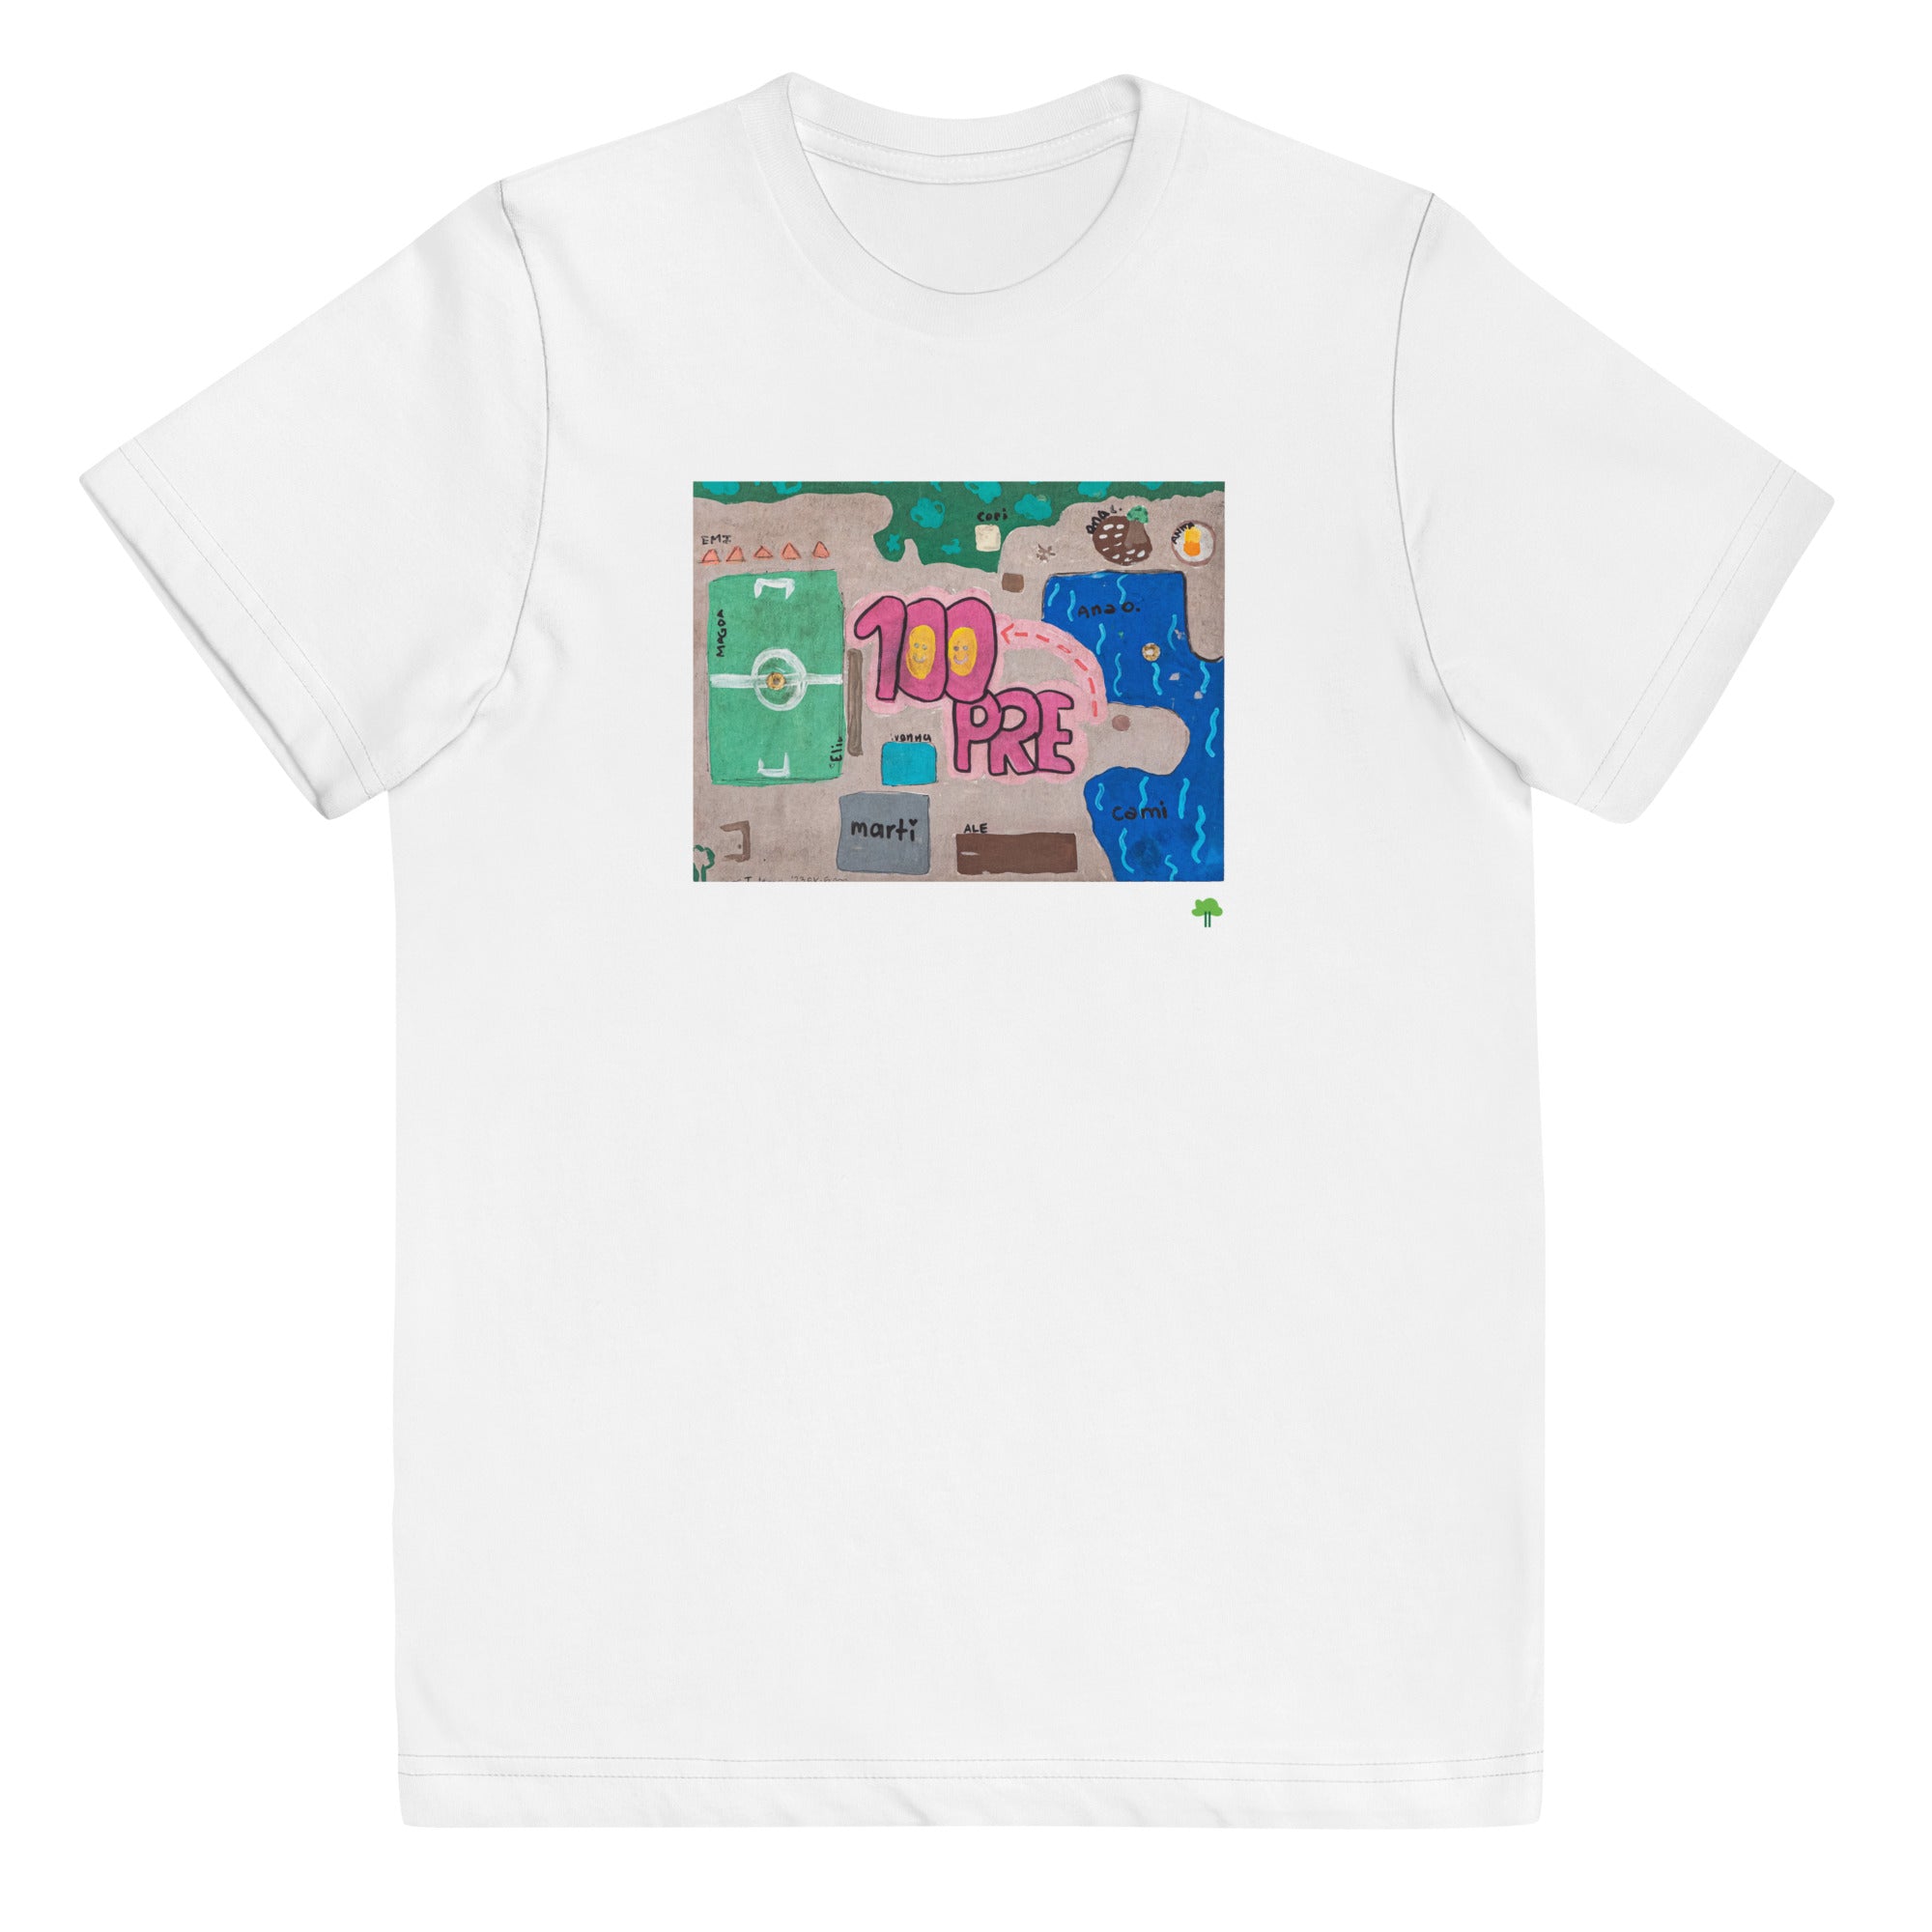 I Temp - Sabana - K6 | Youth jersey t-shirt